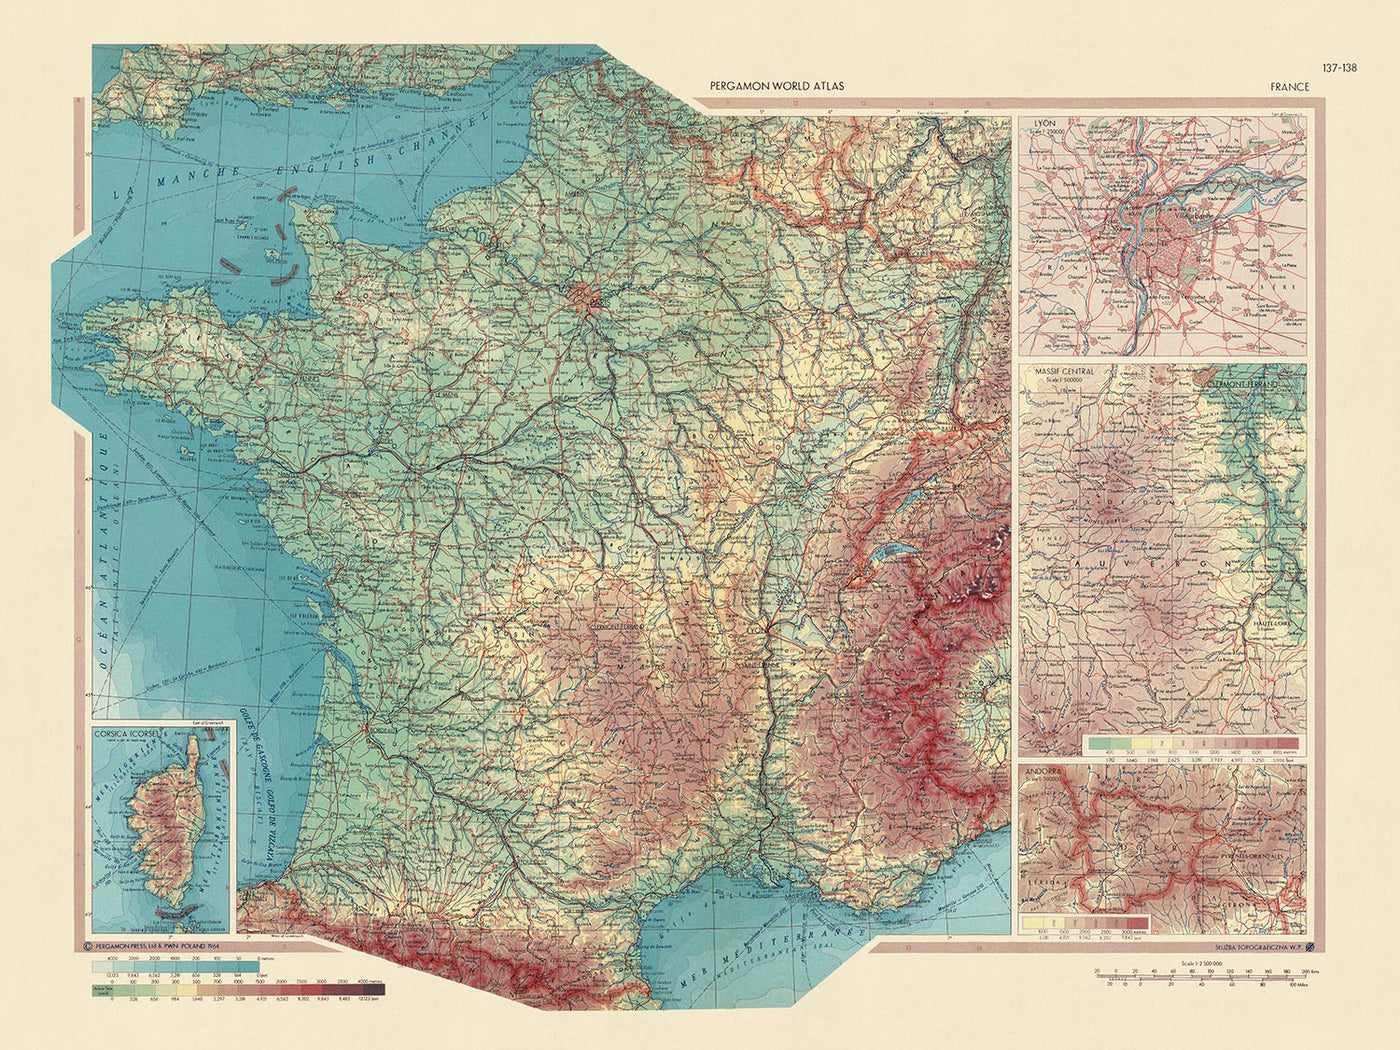 Alte Karte von Frankreich vom Topografischen Dienst der polnischen Armee, 1967: Andorra, Zentralmassiv, Lyon, Korsika, detaillierte politische und physische Anordnung